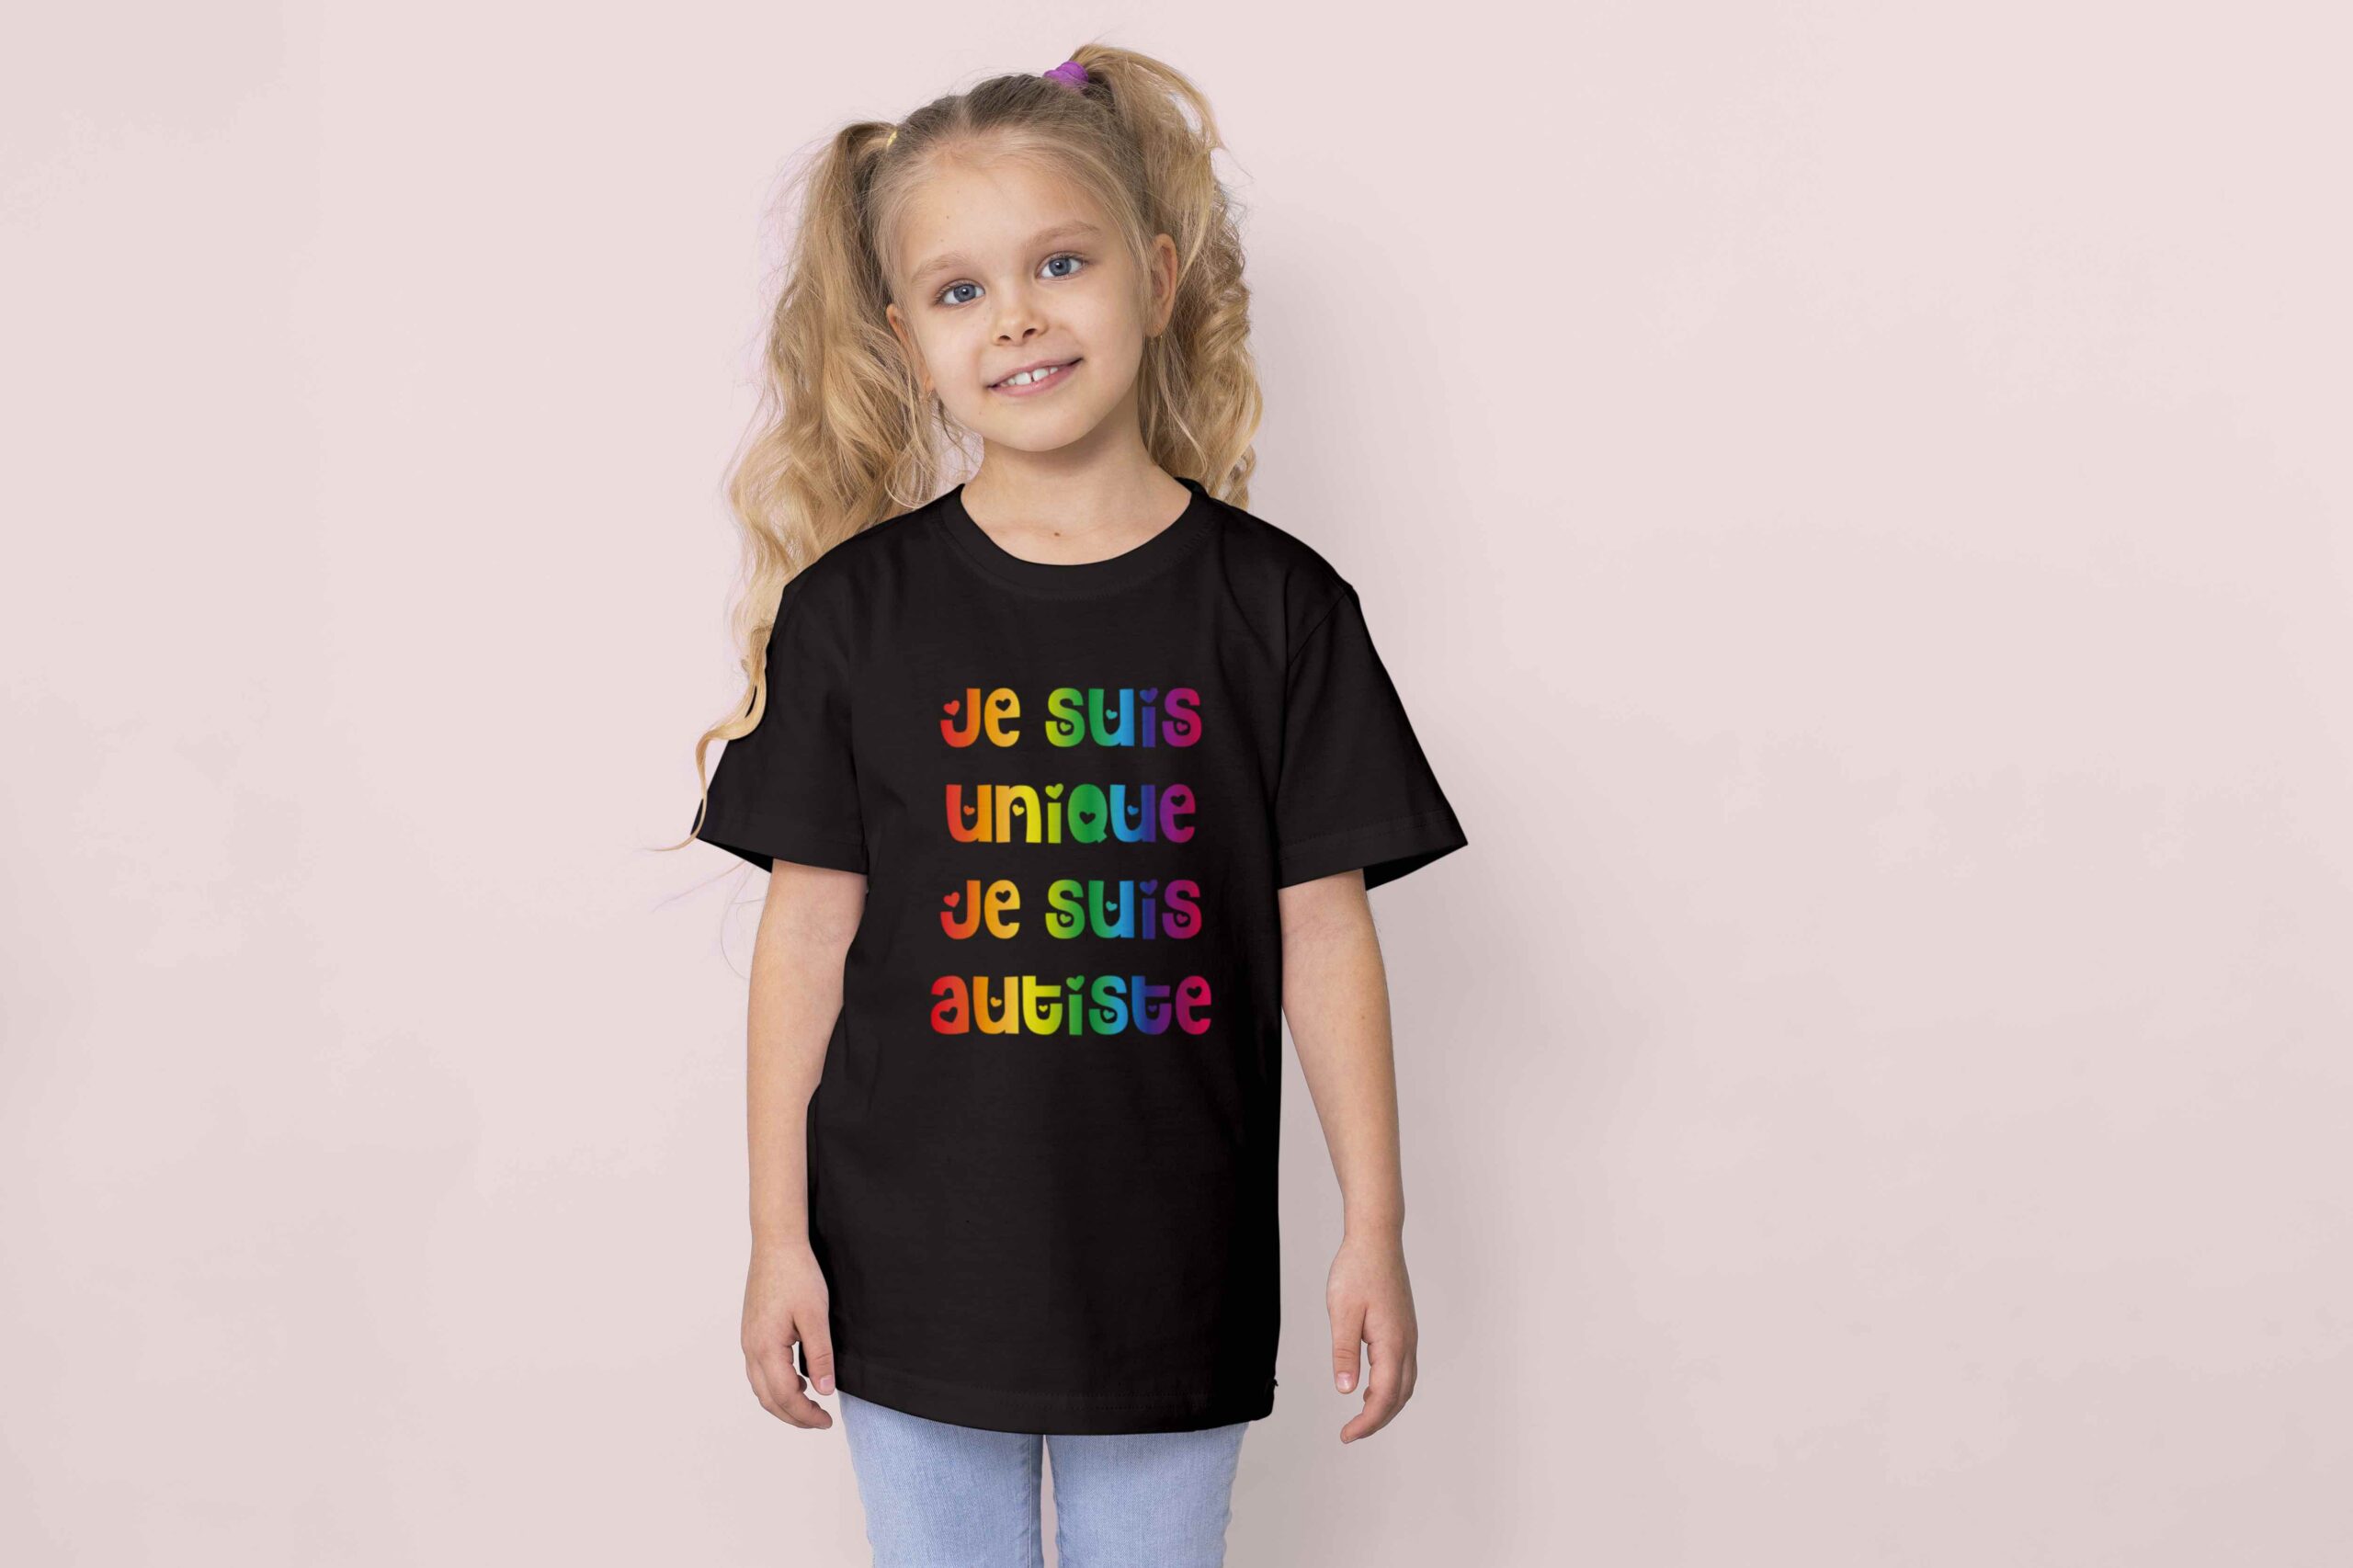 T-shirt Marraine / Filleul Ensemble Cadeau avec prénom personnalisable  Taille S Enfant 3/4 ans